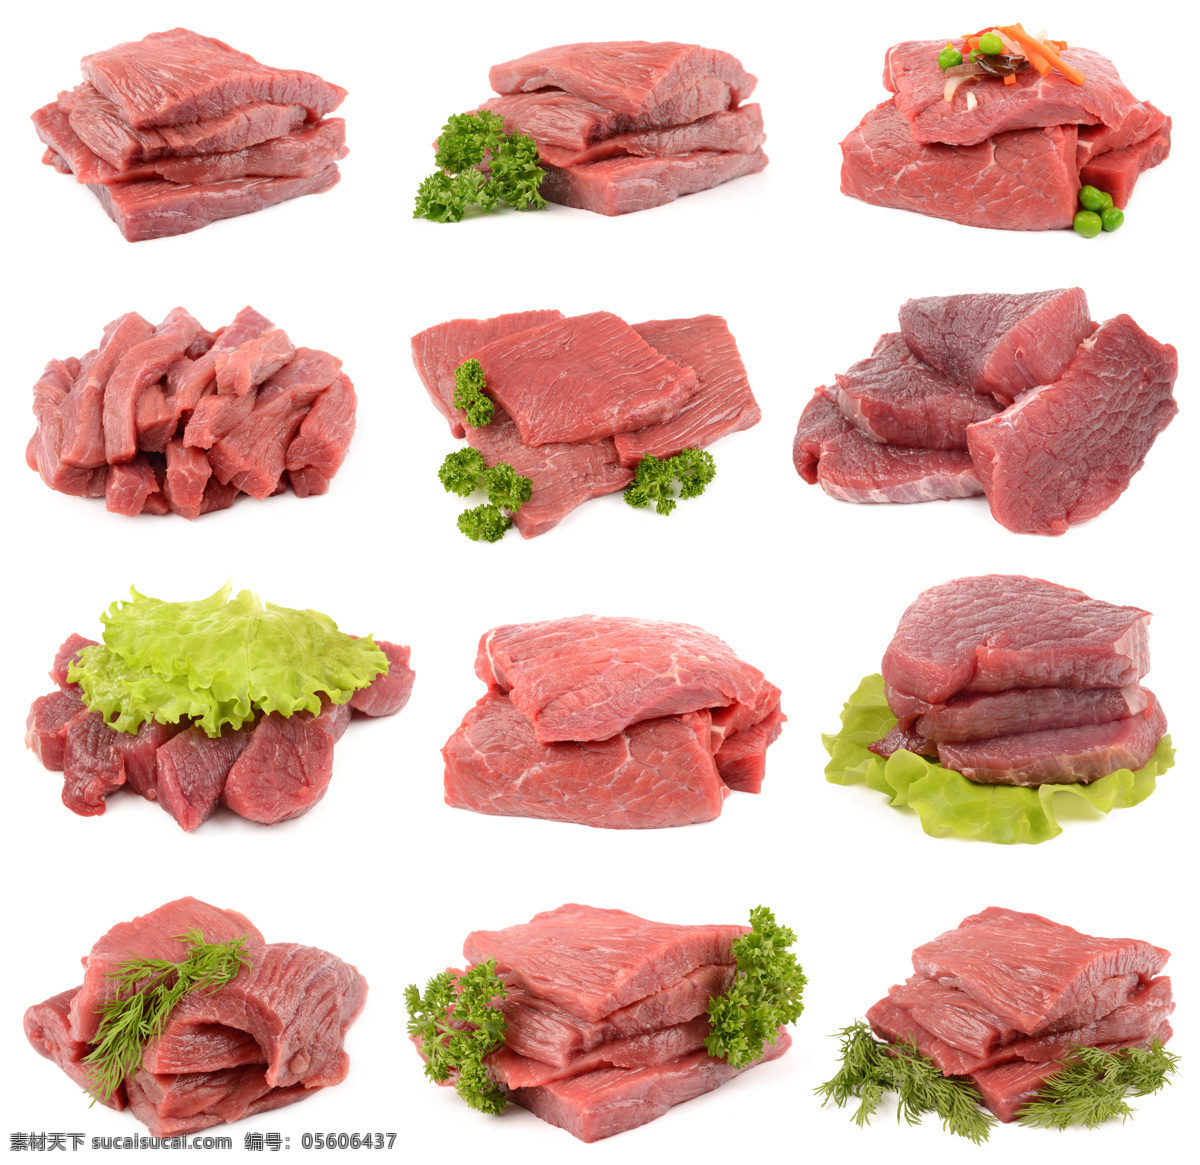 肉块 肉片 生肉 肉类 猪肉 牛肉 排骨 鸡肉 肉卷 香肠 切片 生肉块 鲜肉 食物图片 生活百科 餐饮美食